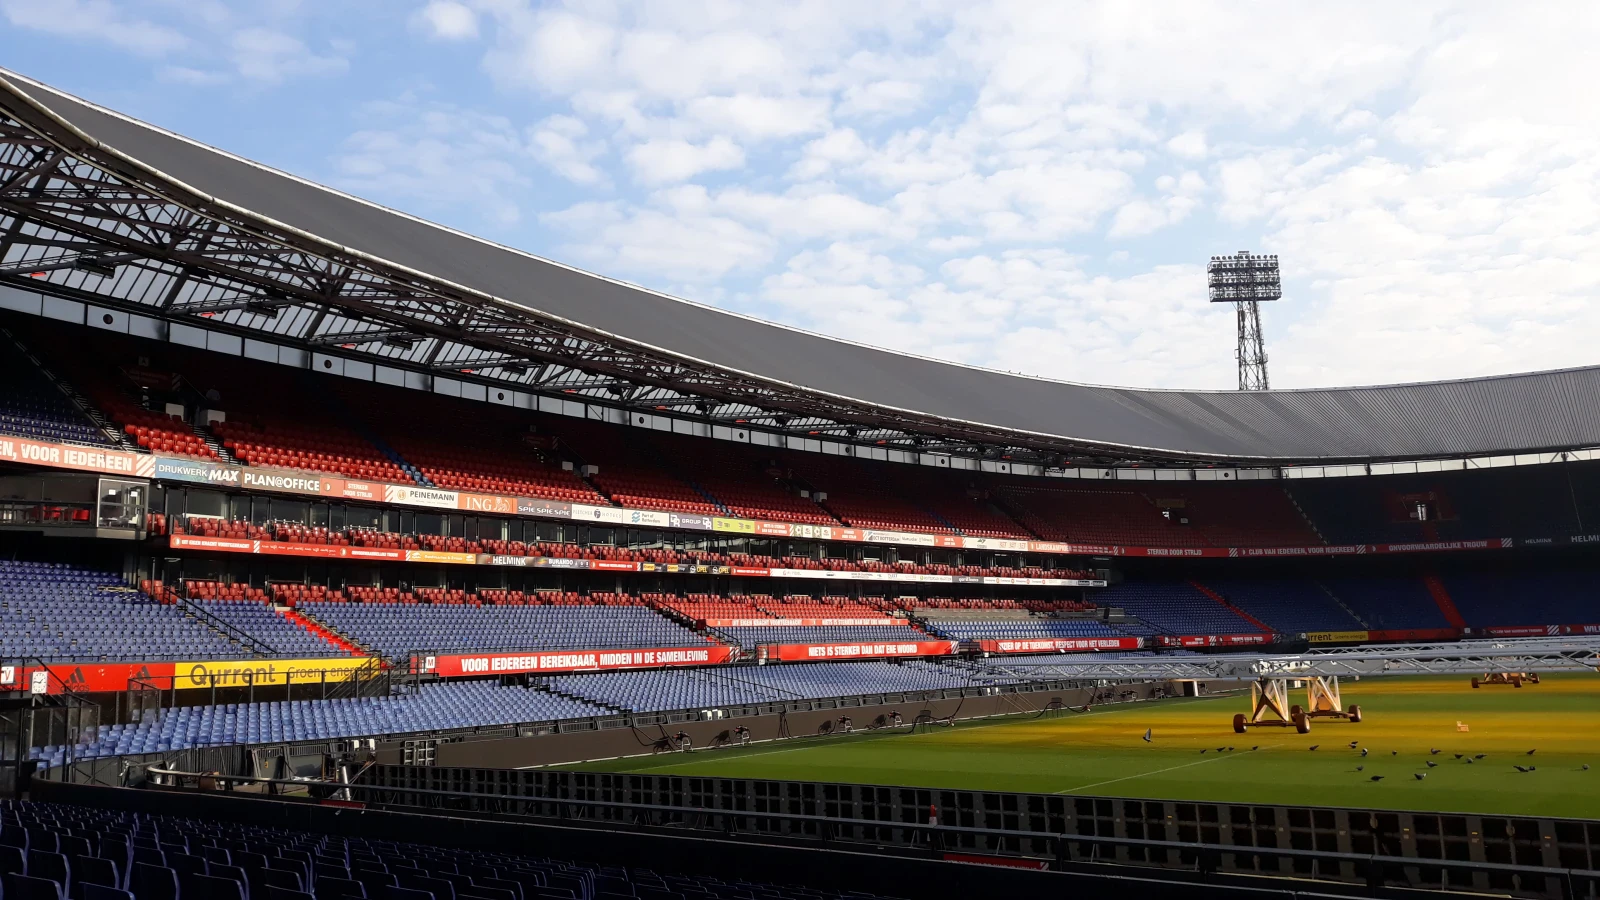 Oefenwedstrijd tussen RC Strasbourg en Feyenoord live uitgezonden